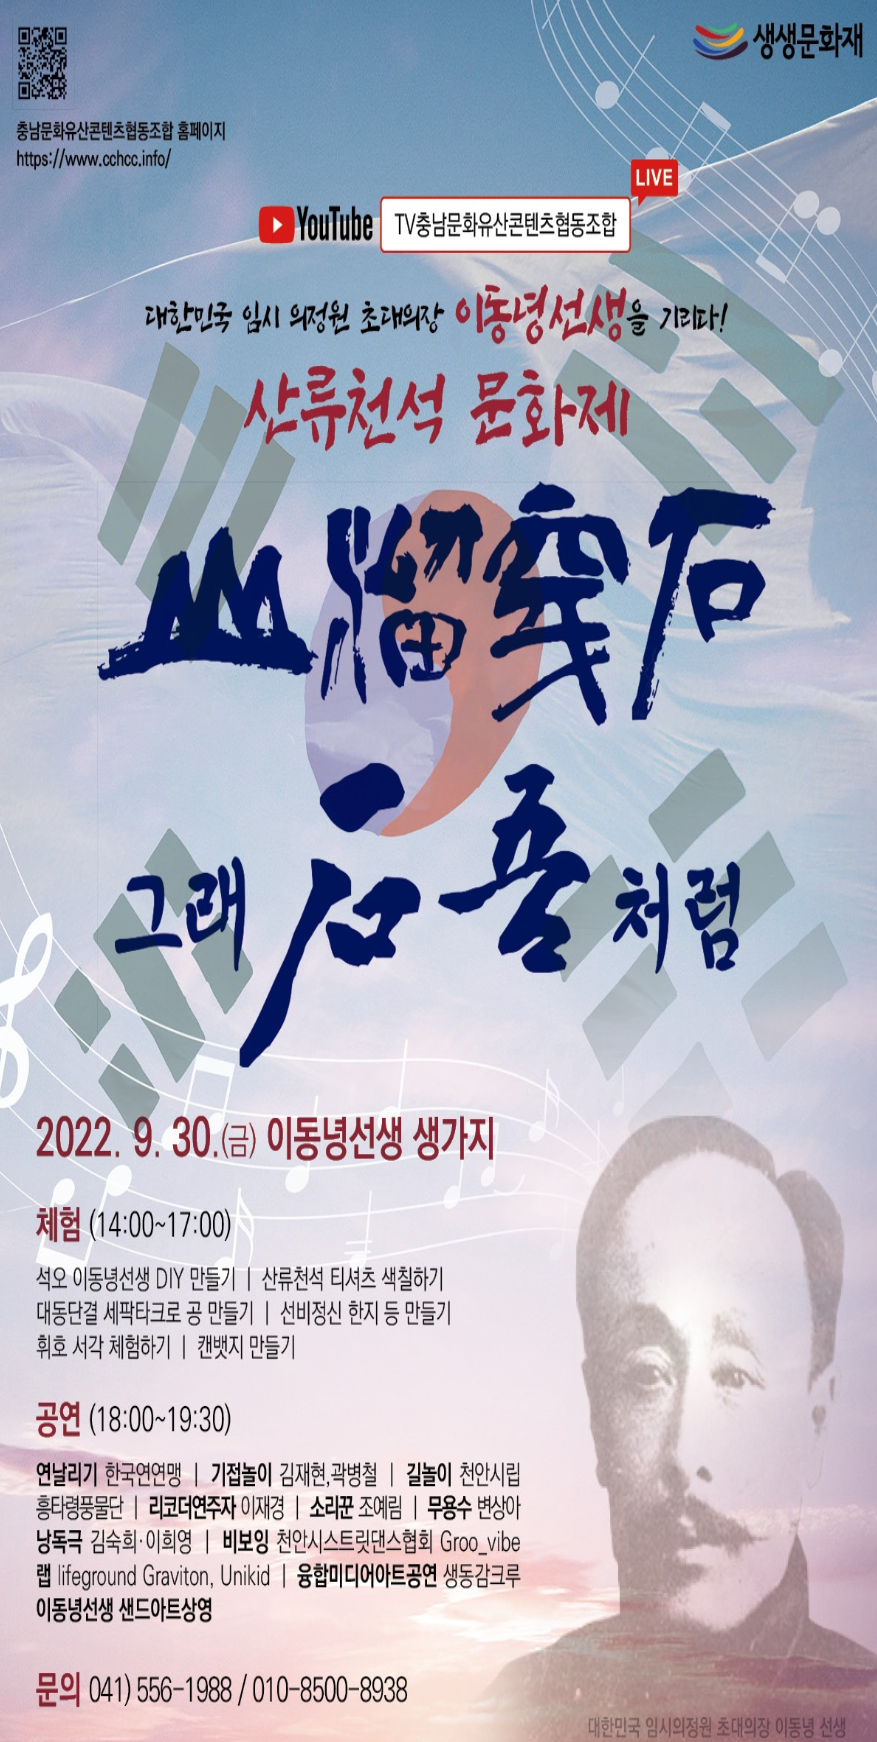 2022 산류천석 문화제 행사 알림 (2022년 9월 30일)